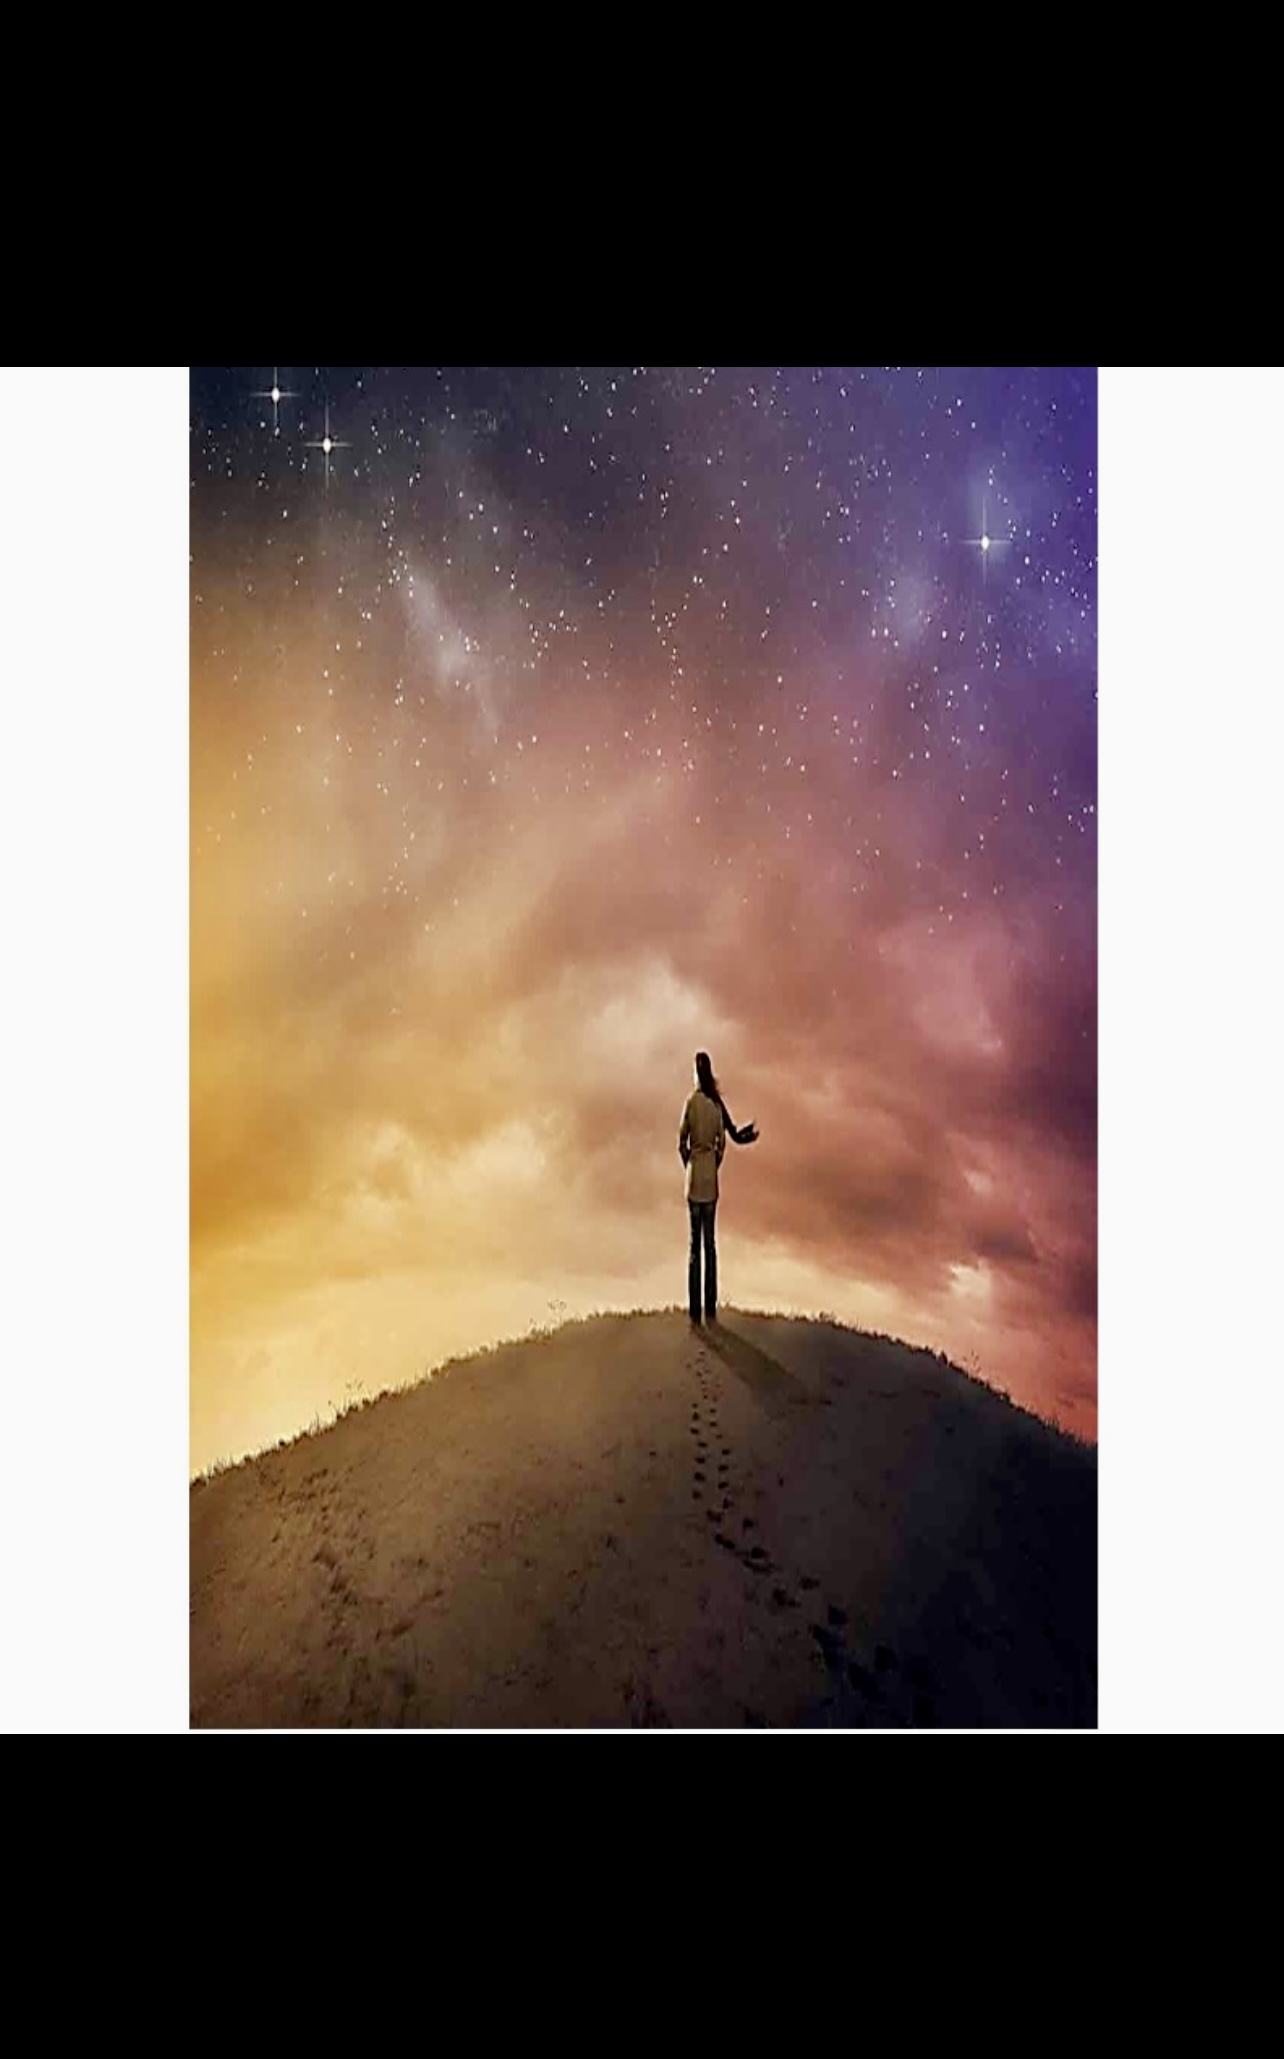 Un homme debout au sommet d’une colline sous un ciel étoilé, capturant l’essence de la reviviscence.